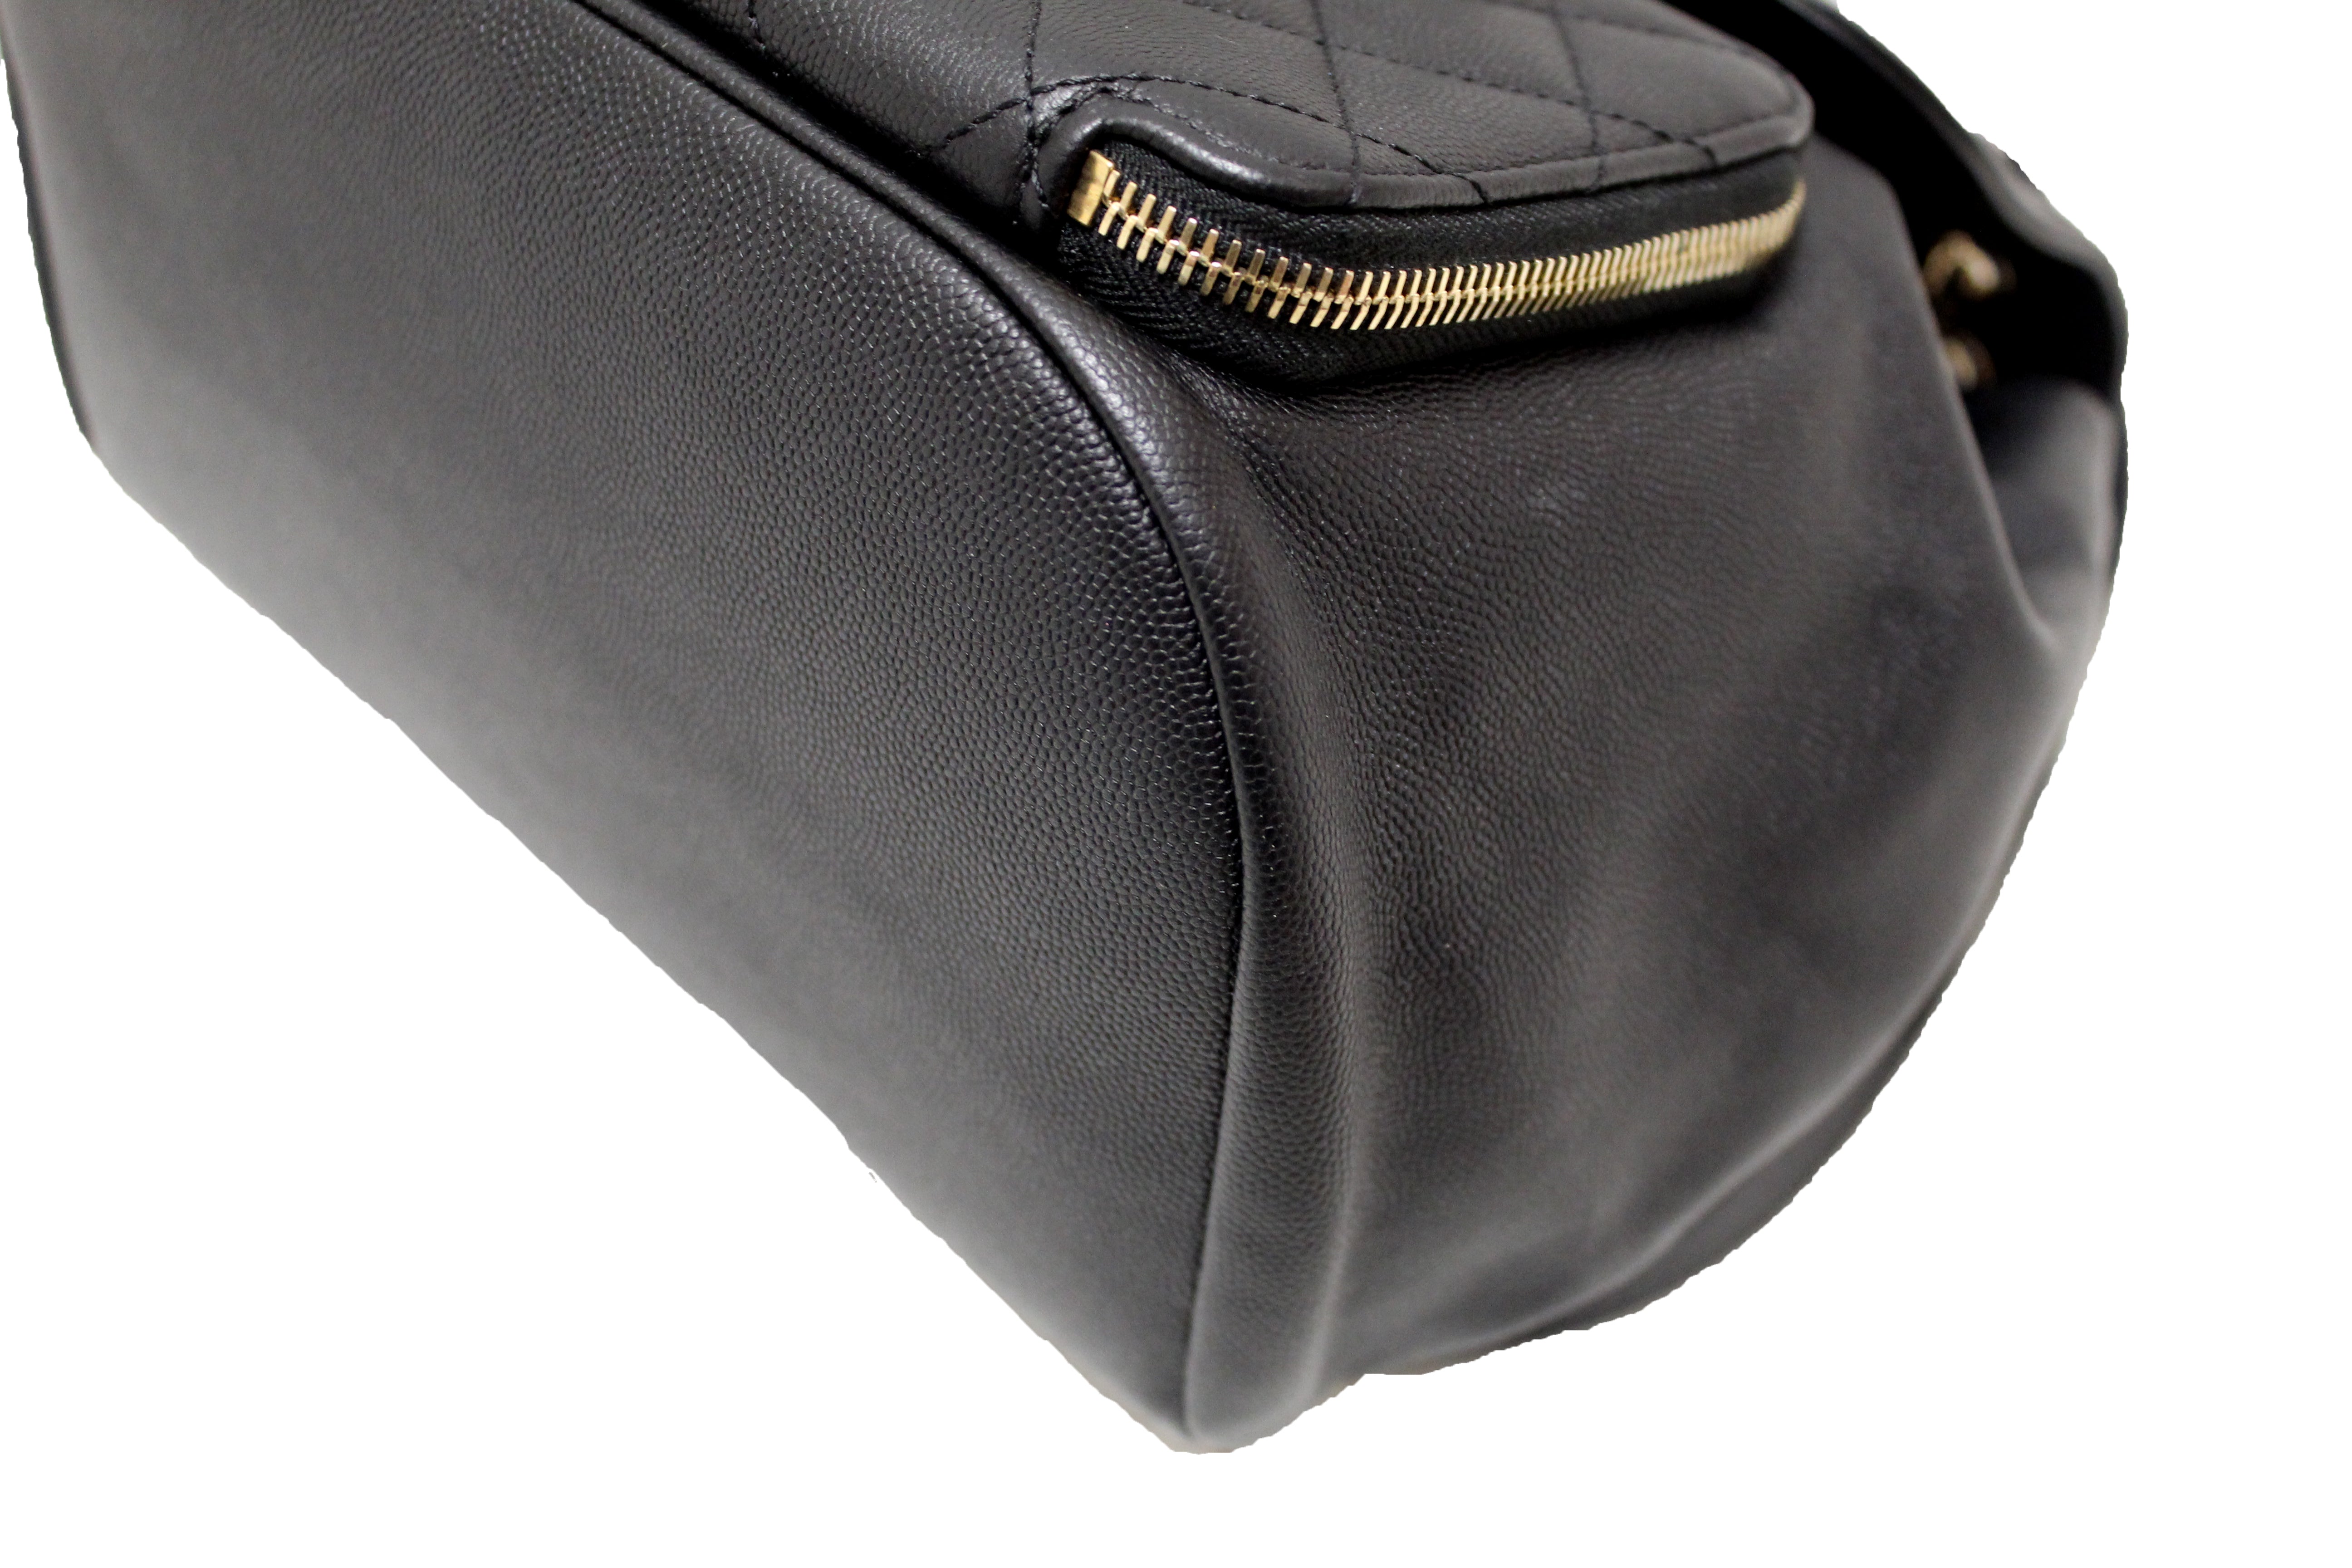 chanel crossbody satchel handbag